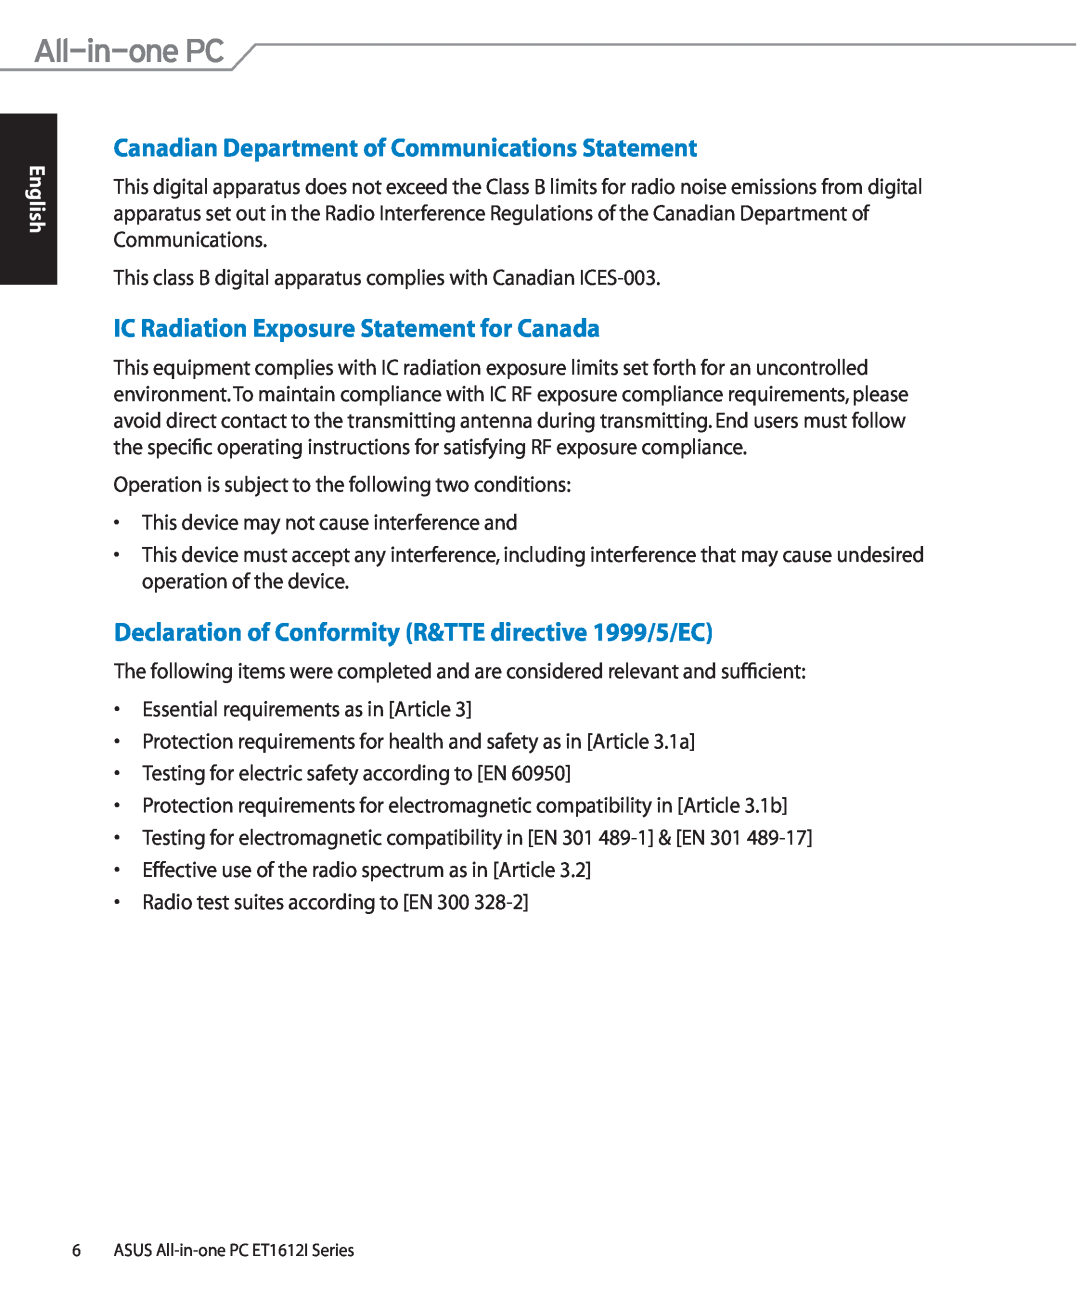 Asus ET1612IUTSB007C Canadian Department of Communications Statement, IC Radiation Exposure Statement for Canada 